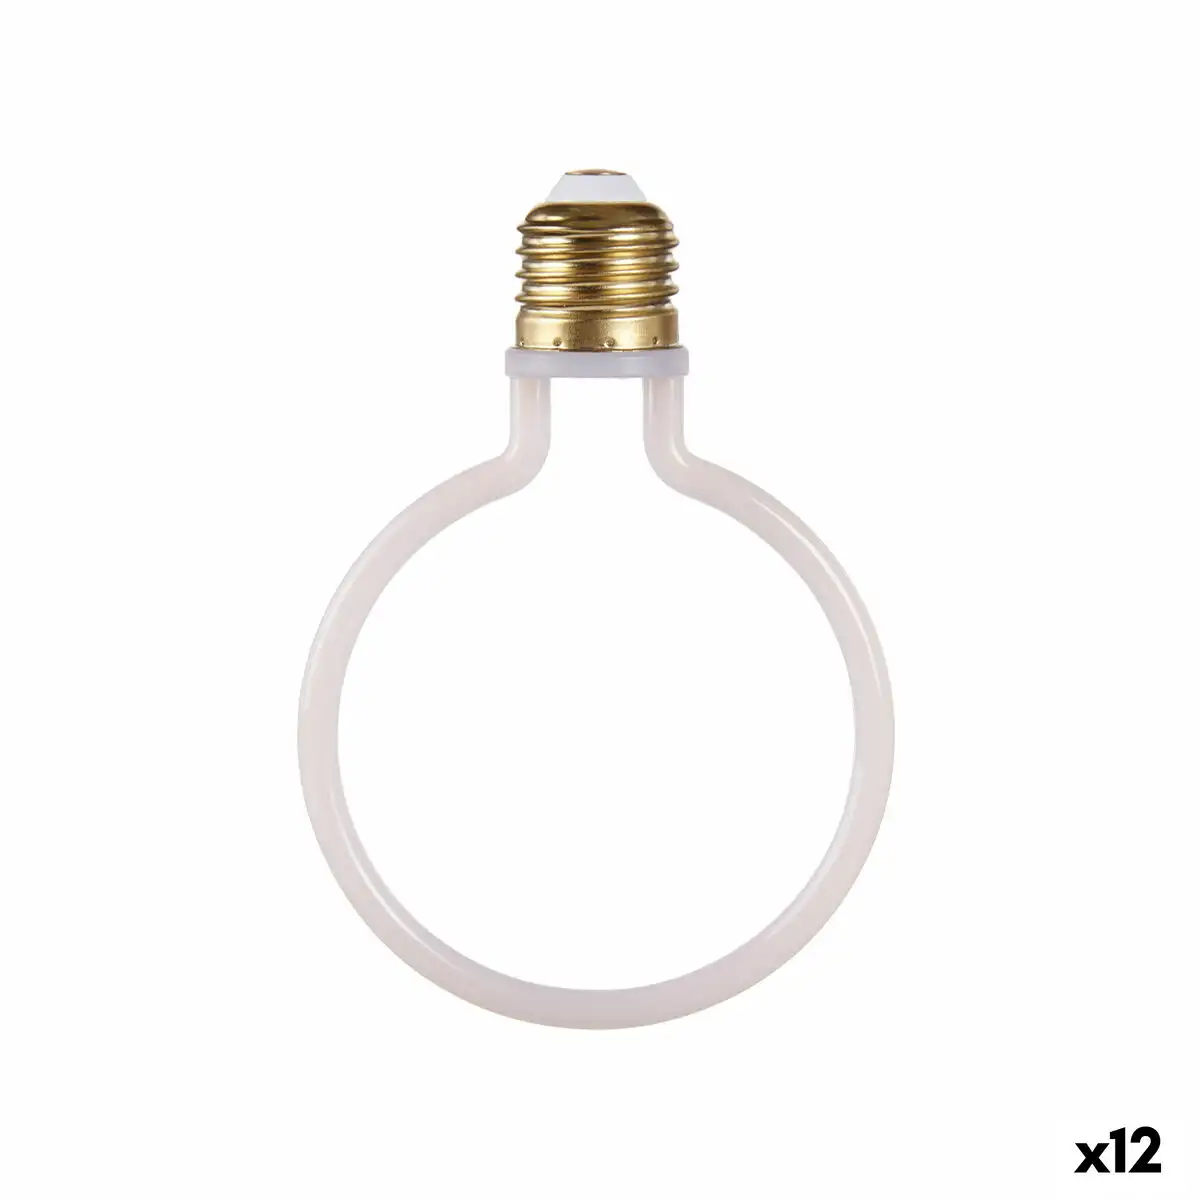 Lampe led blanc 4 w e27 9 3 x 13 5 x 3 cm 2700 k 12 unites _9201. DIAYTAR SENEGAL - Votre Portail Vers l'Élégance Accessible. Parcourez notre boutique en ligne pour découvrir des produits qui incarnent le luxe à des prix abordables.